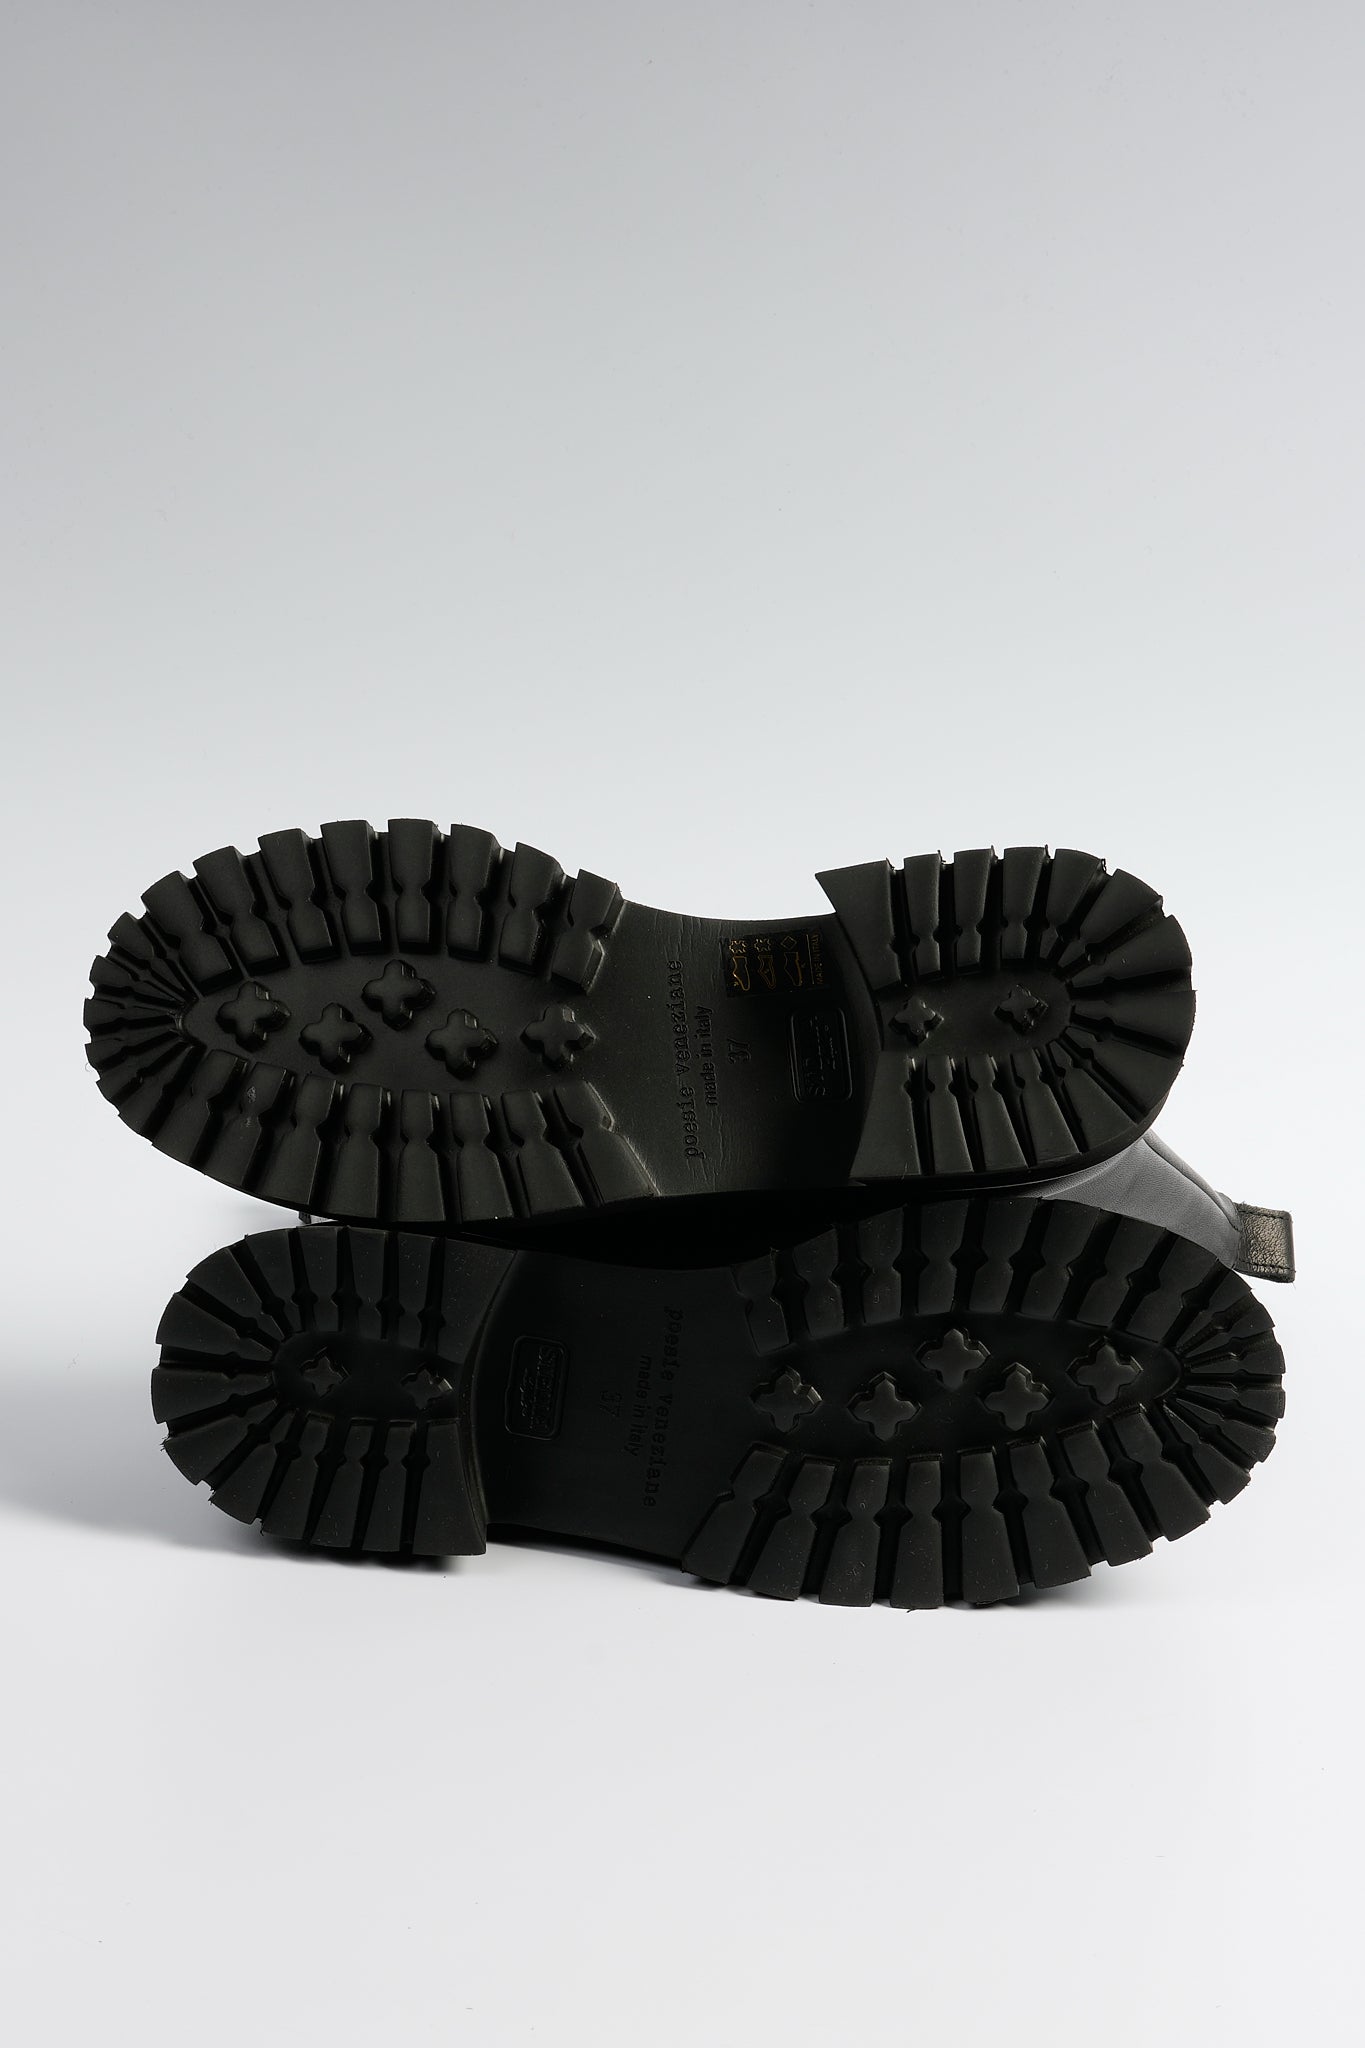 Poesie Veneziane Boot Leather Black Women-6